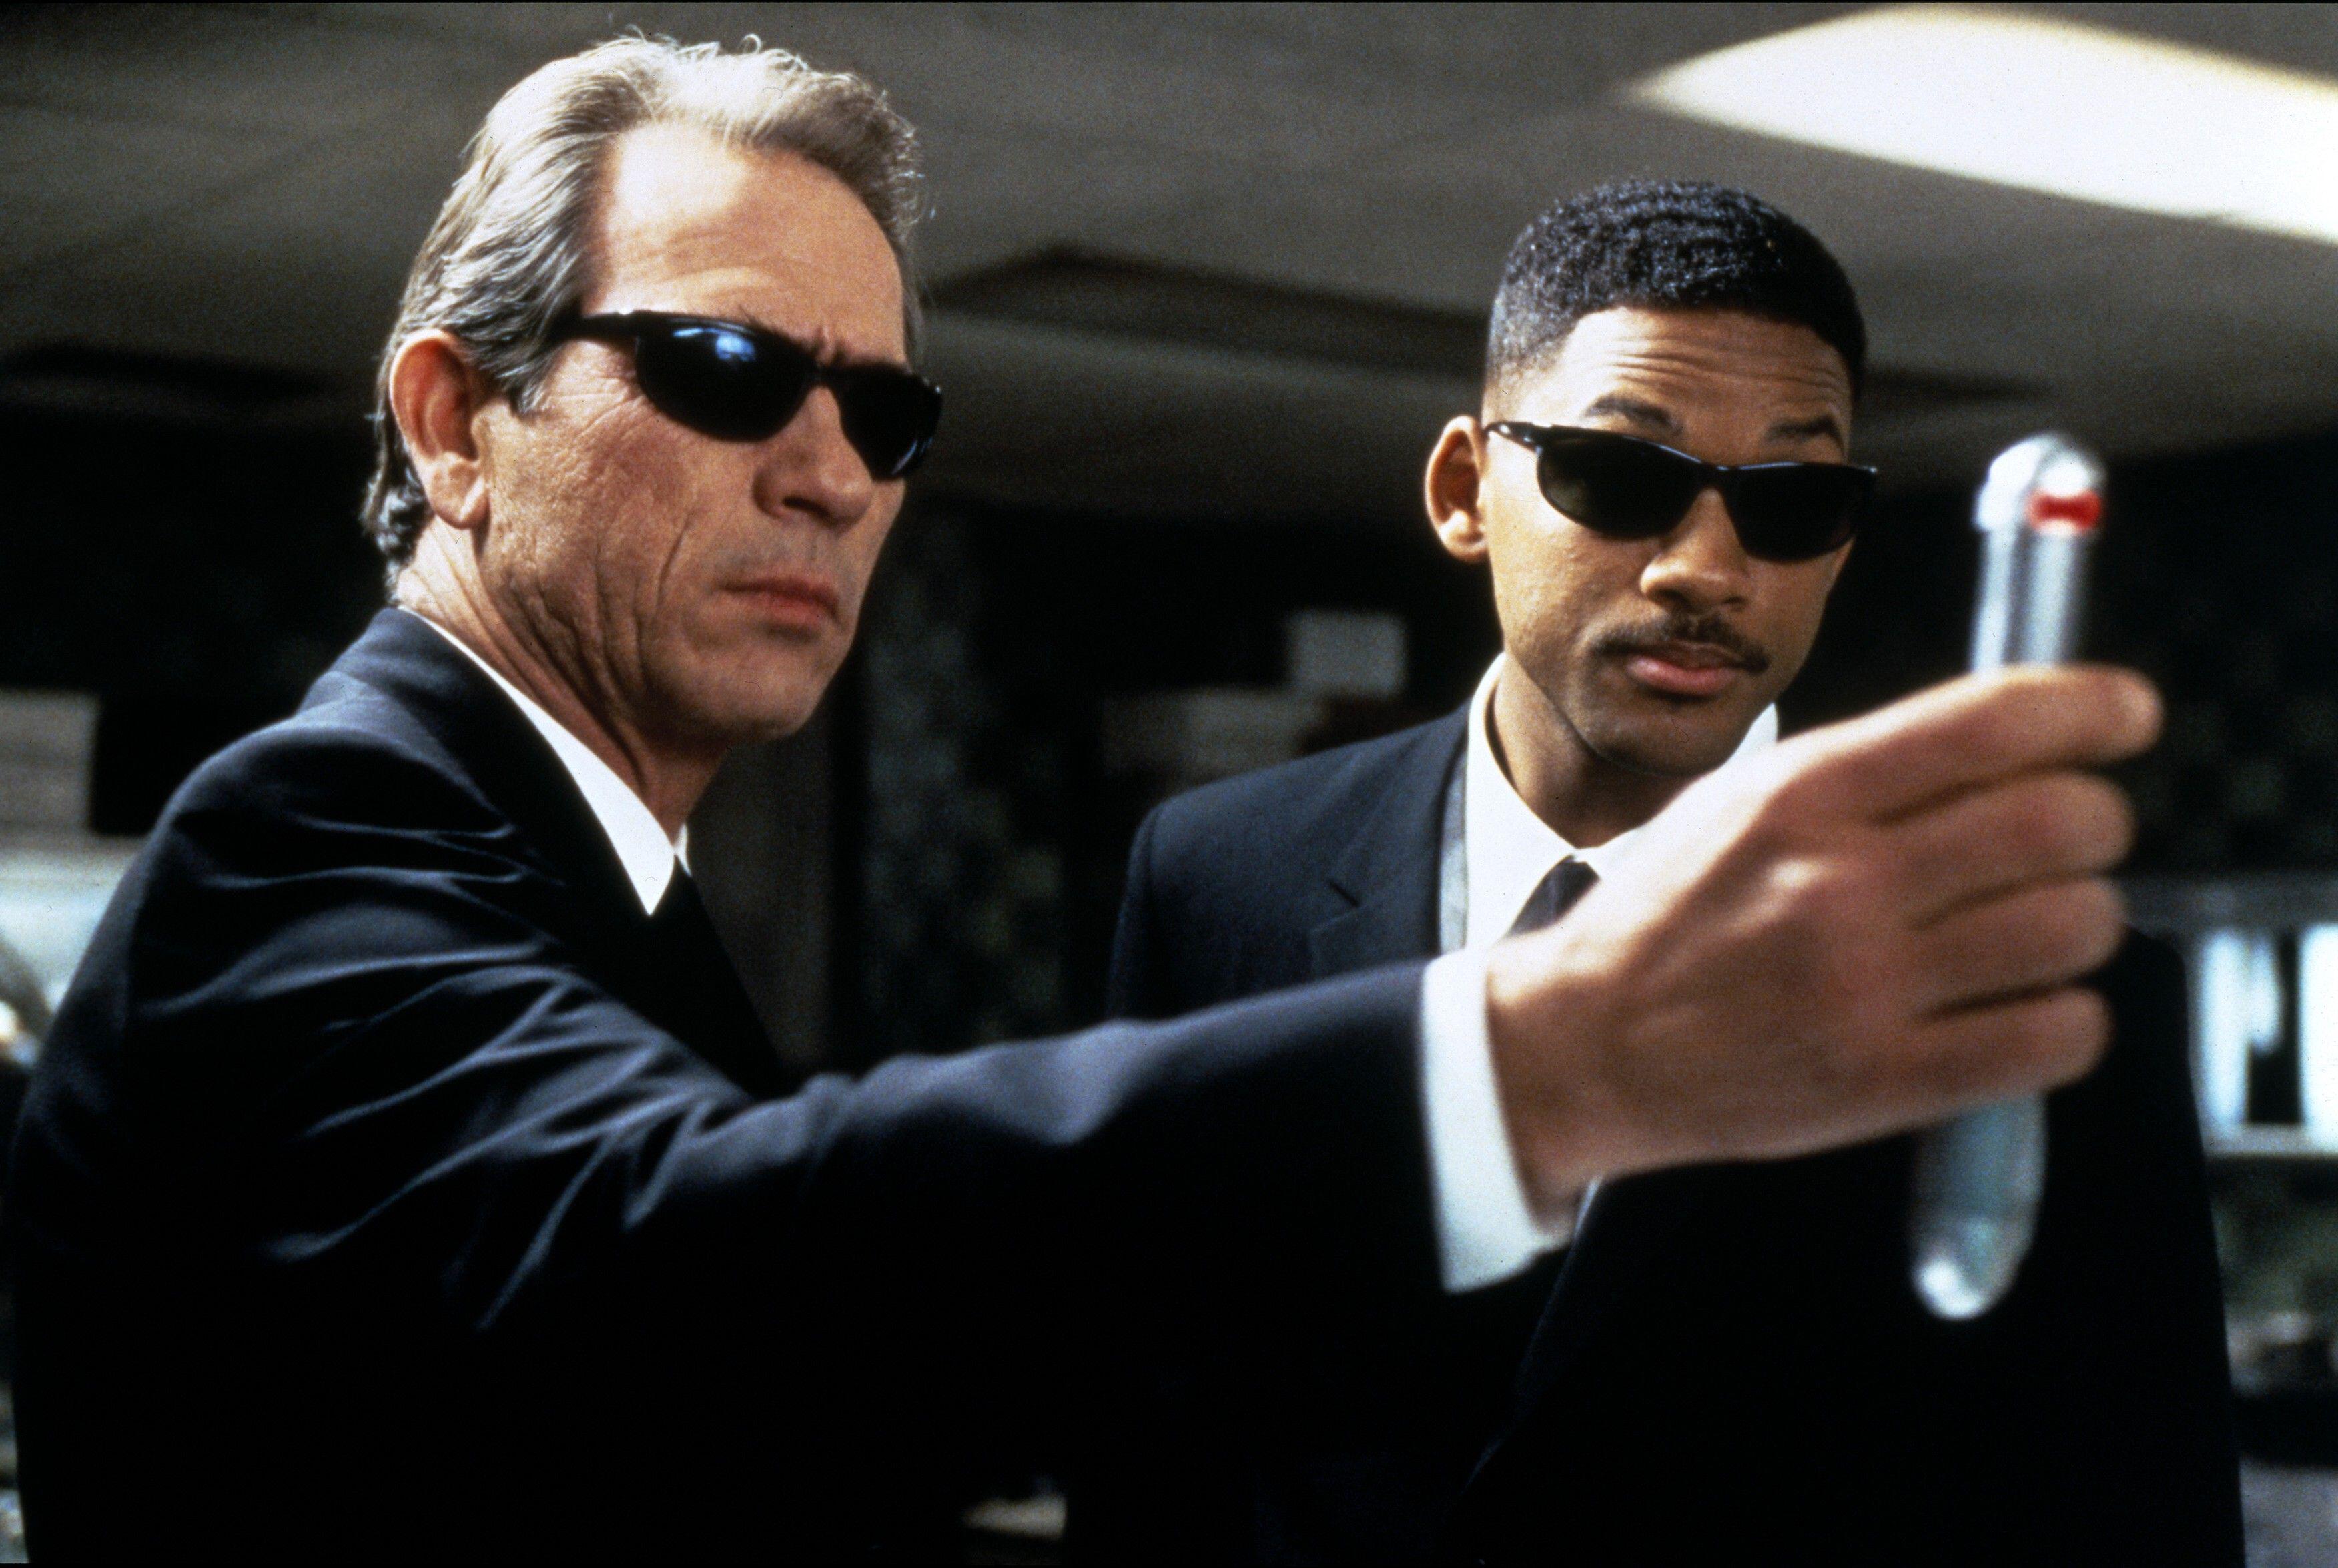 (De gauche à droite) Tommy Lee Jones en tant que K, tenant un neuralyzer, tandis que Will Smith en tant que J regarde Men In Black